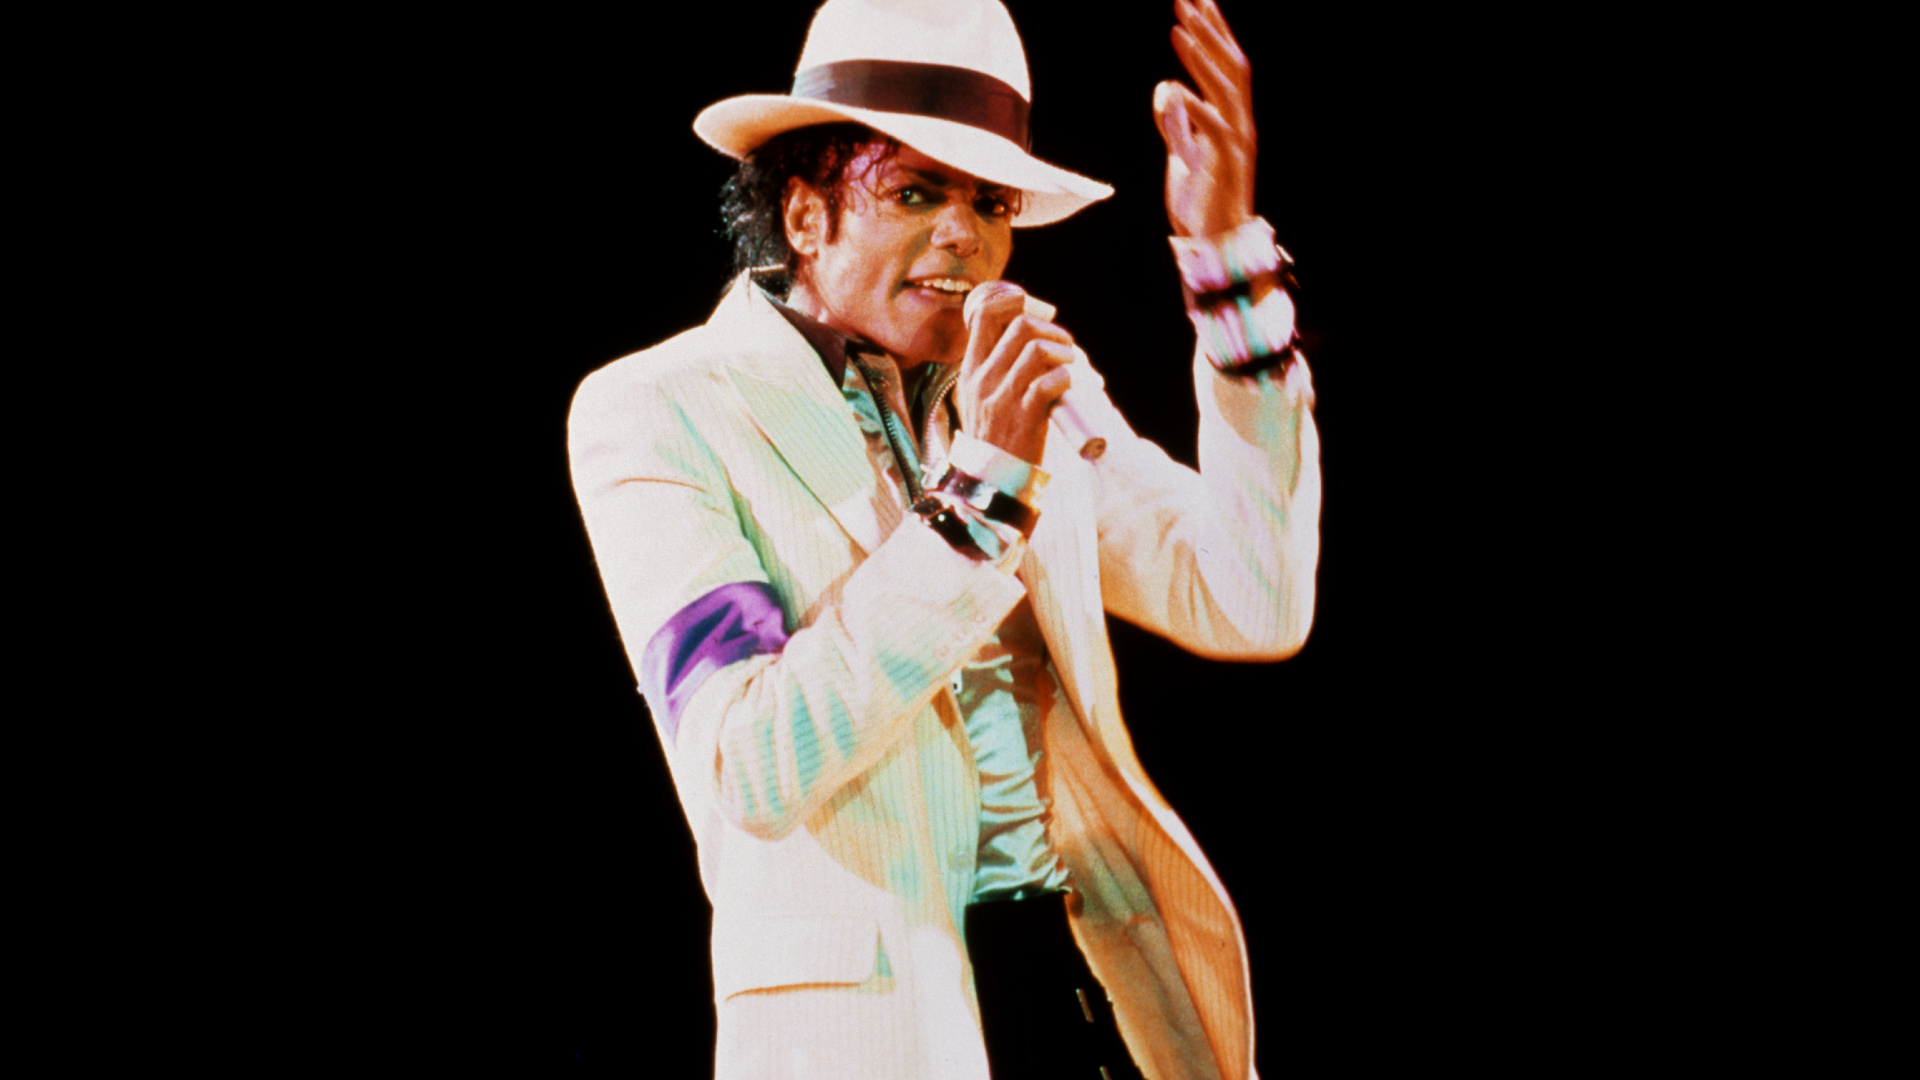 迈克尔*杰克逊, 糟糕, 性能, 音乐艺术家, 歌手 壁纸 1920x1080 允许